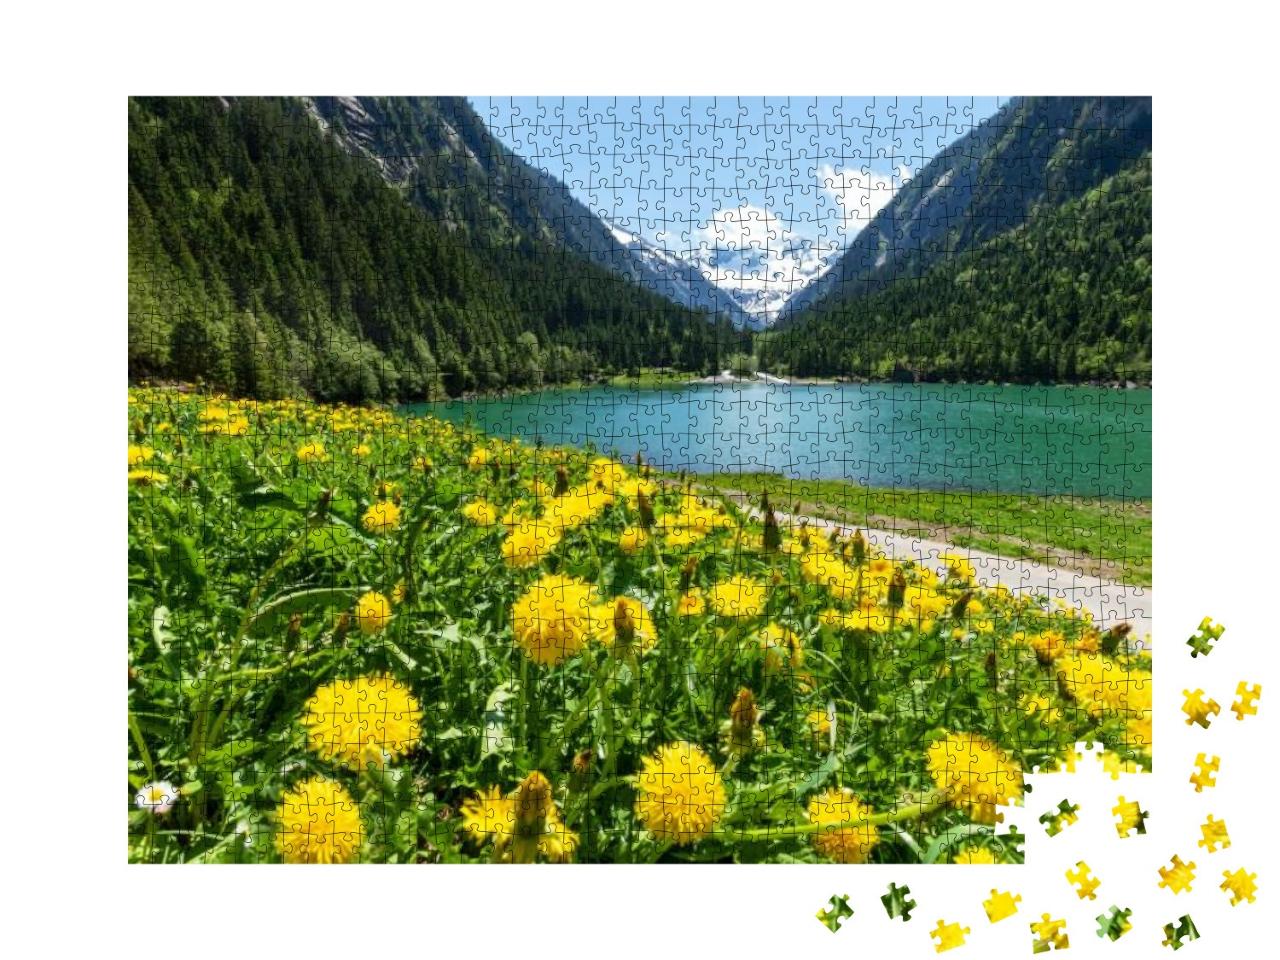 Puzzle 1000 Teile „Sommer in den Tiroler Alpen: Löwenzahn und Bergsee, Zillertal, Österreich“